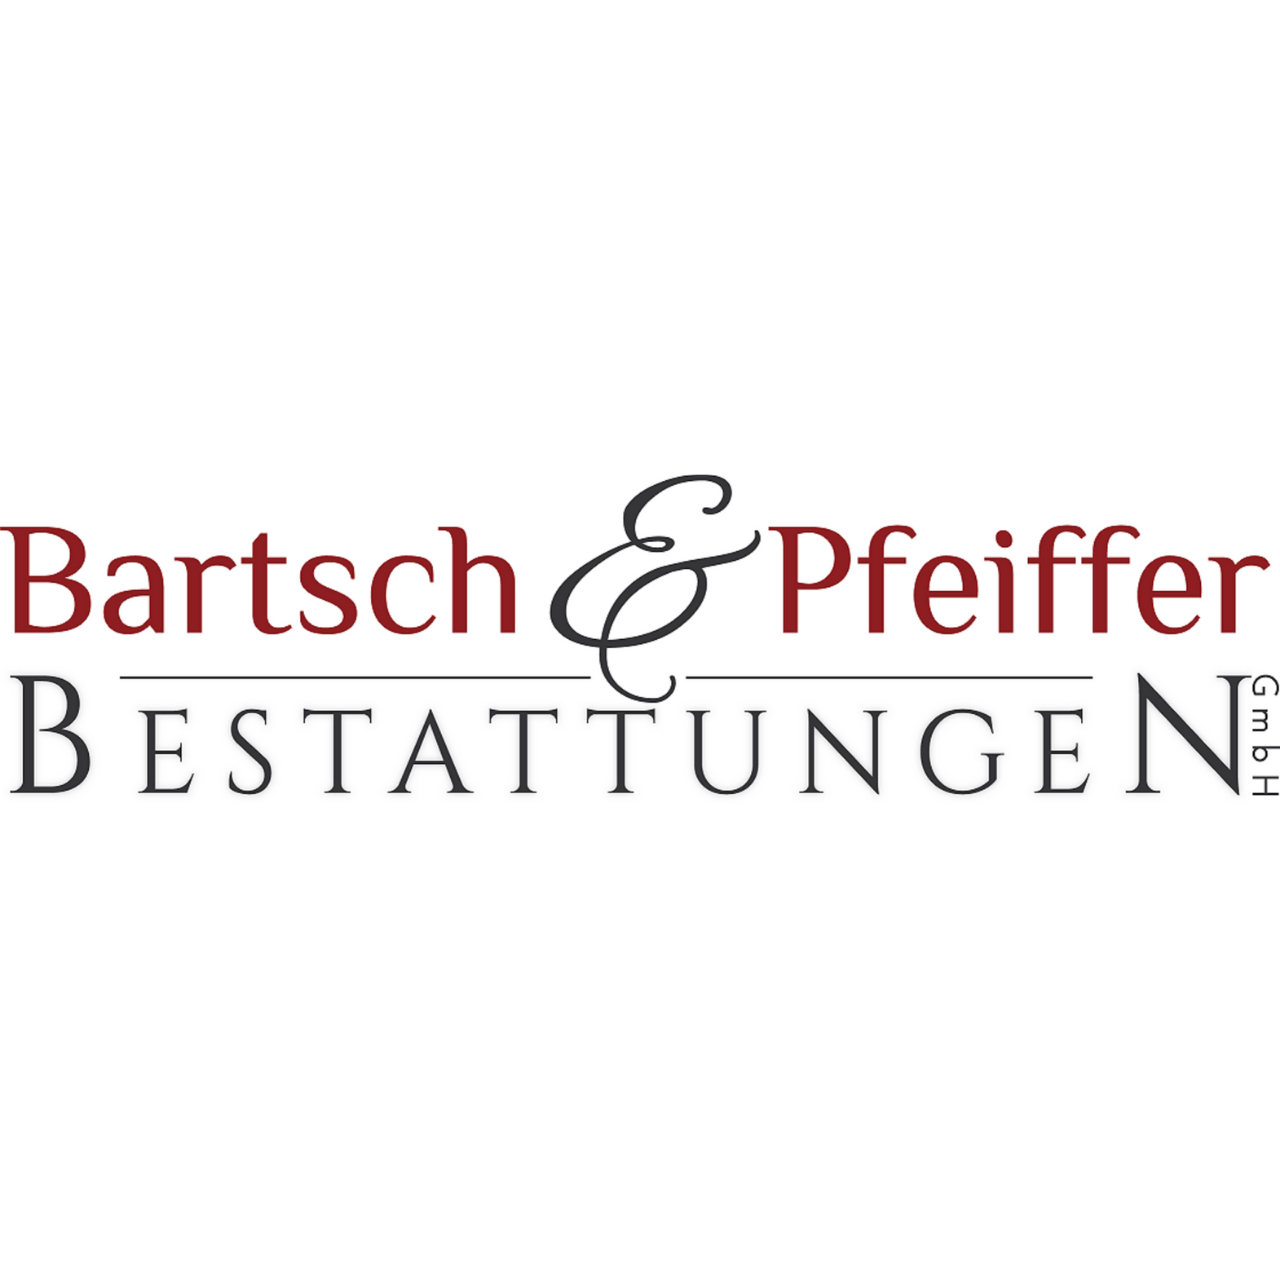 Bartsch & Pfeiffer